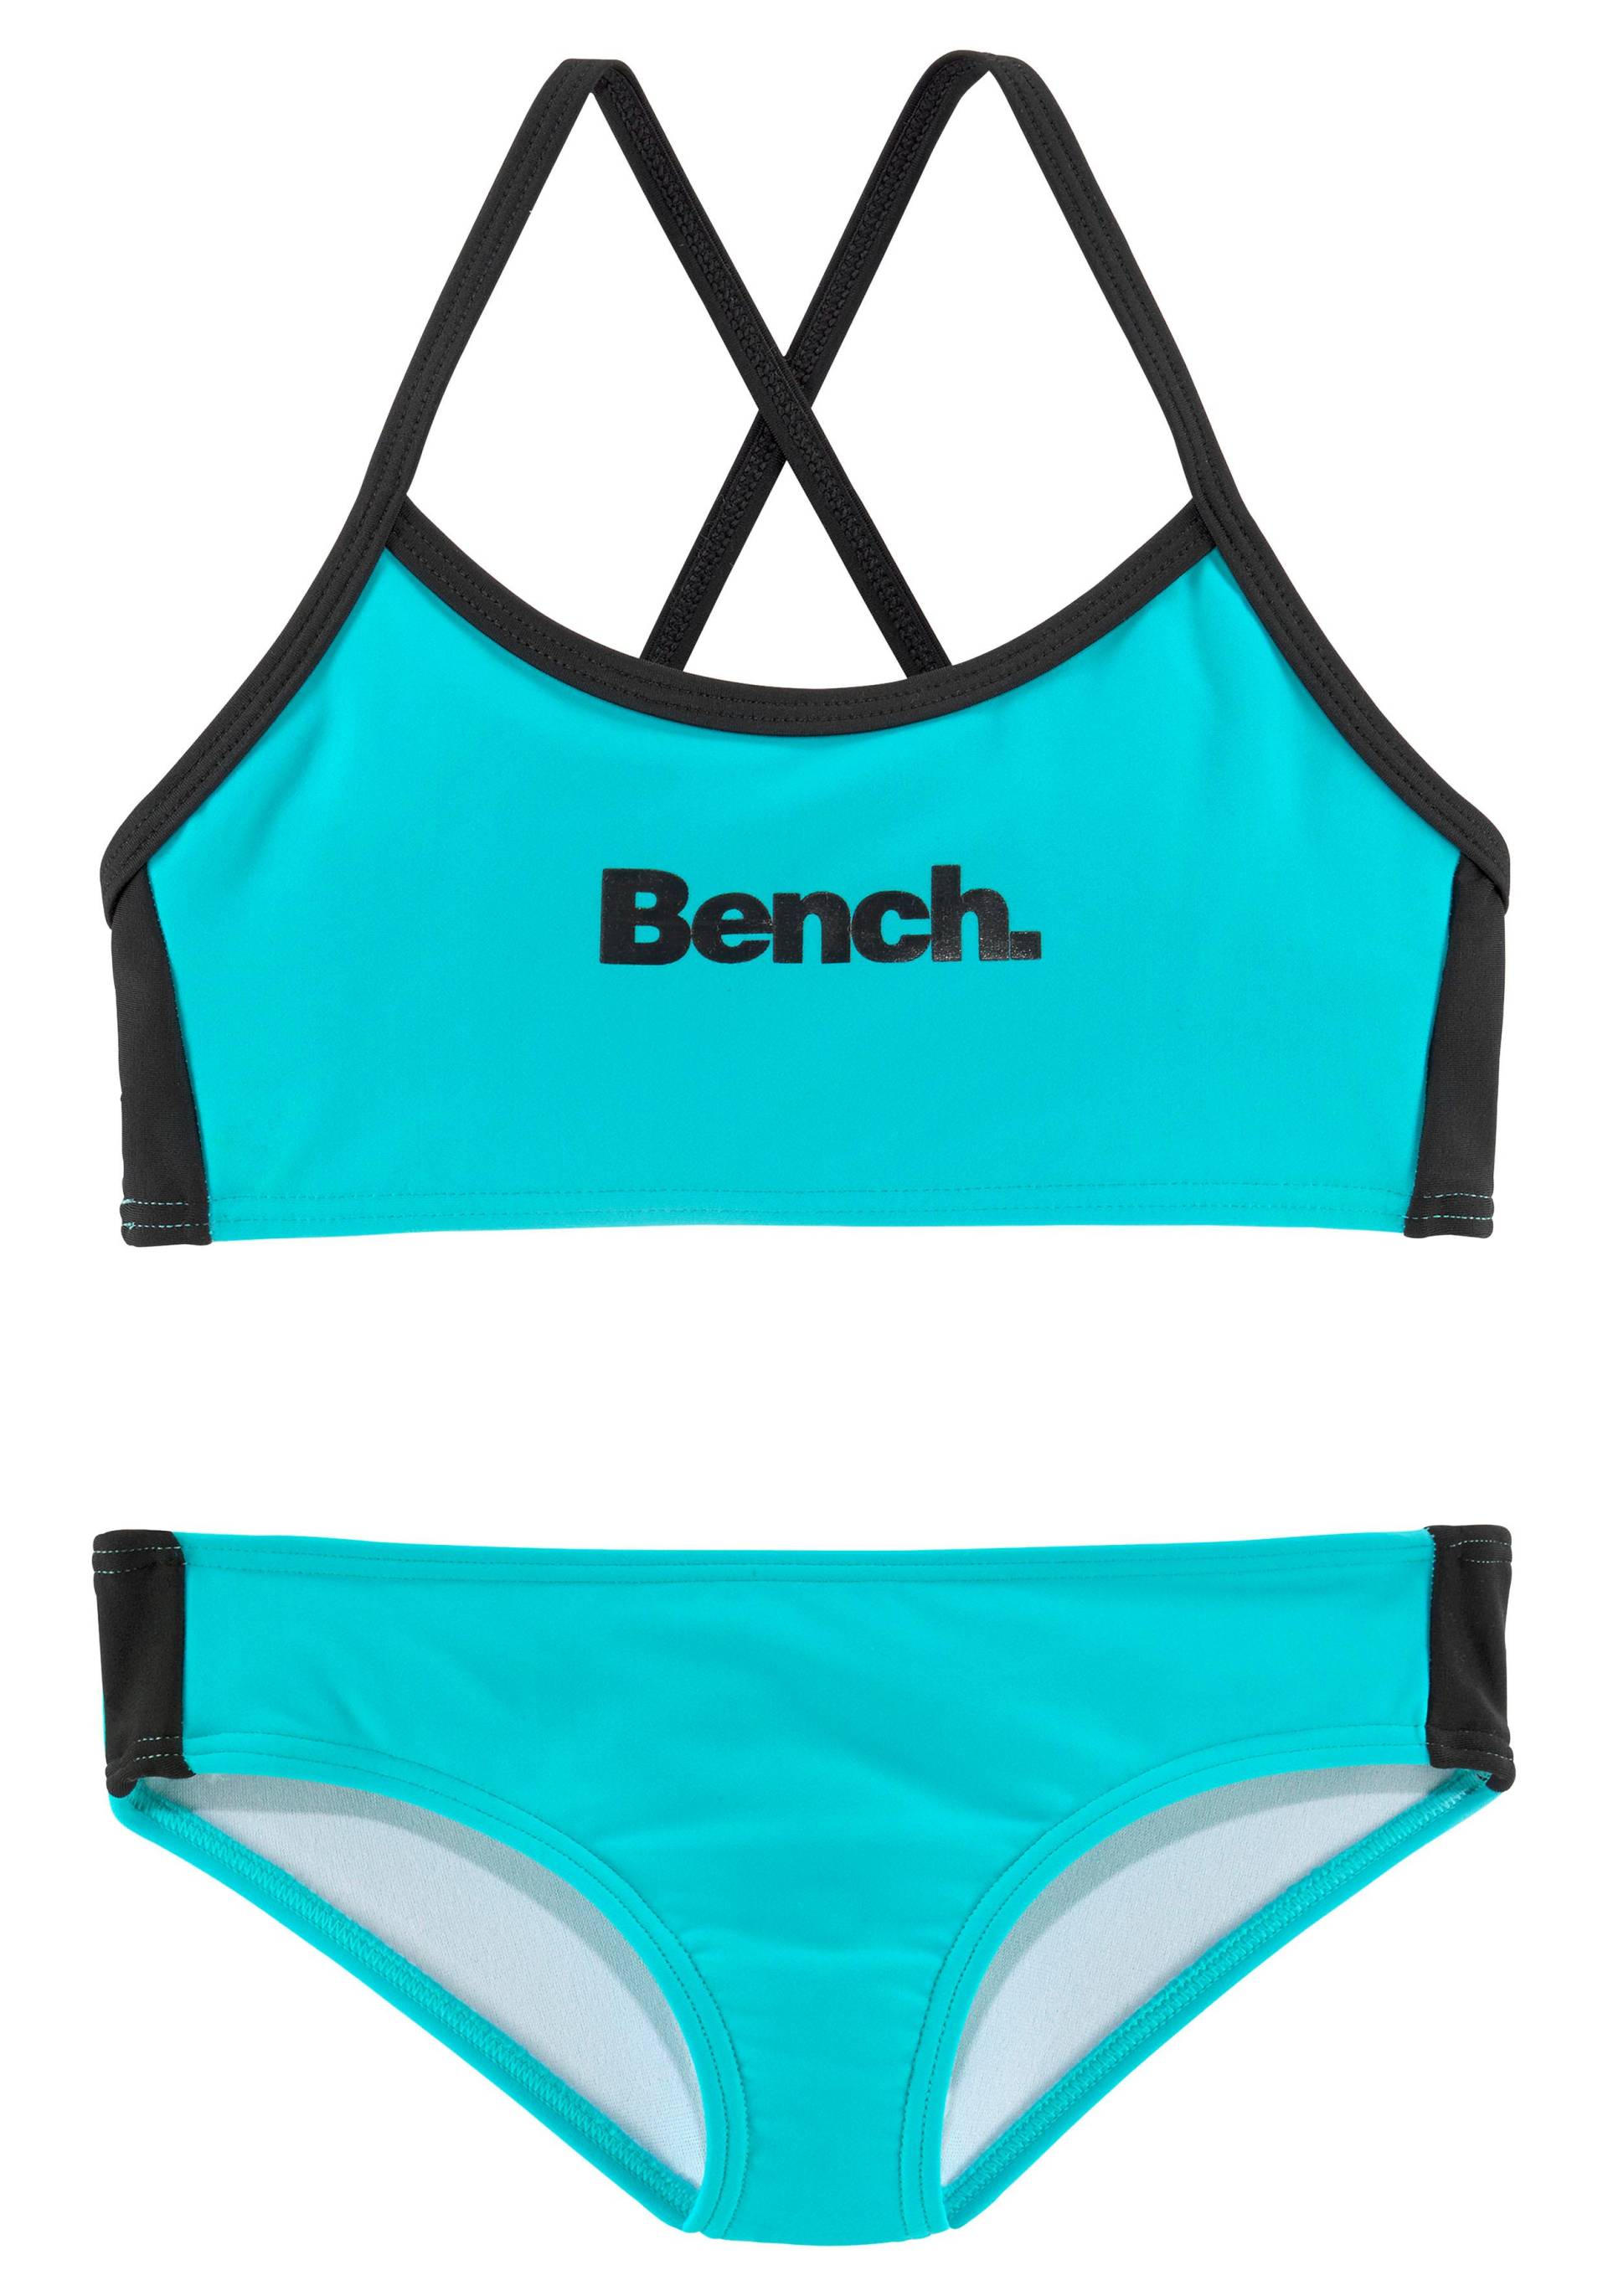 Bench. Bustier-Bikini, mit gekreuzten Trägern von Bench.